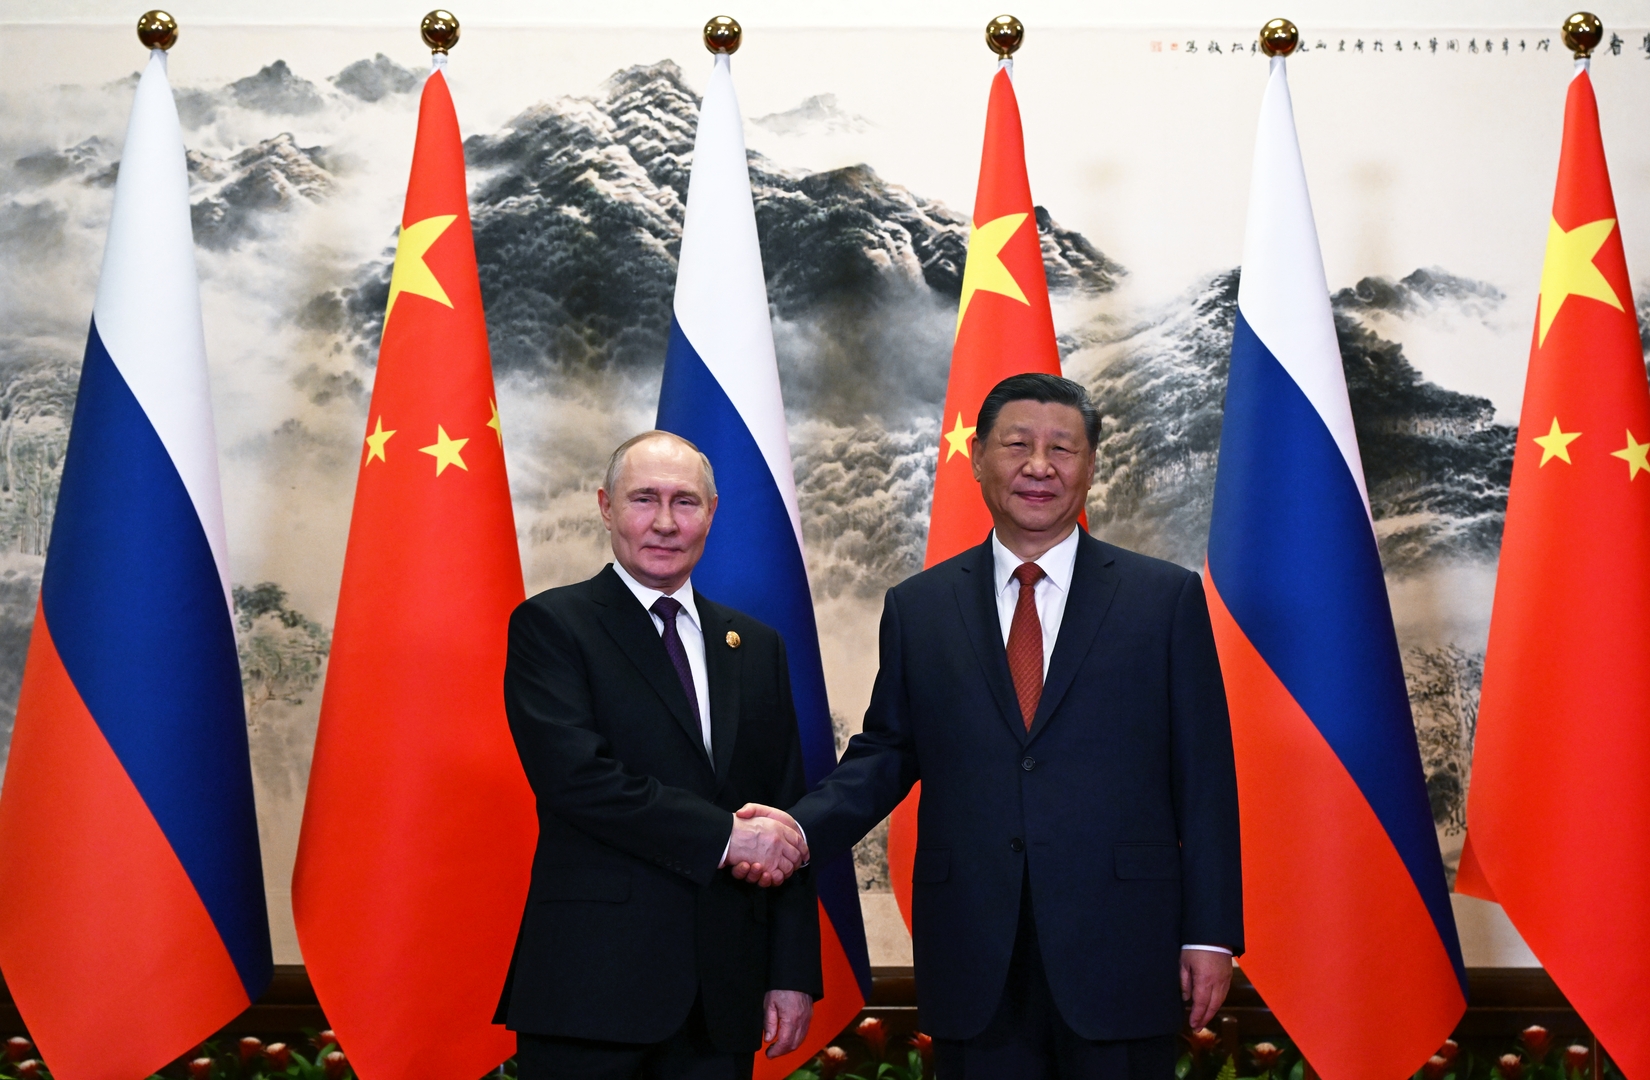 أبرز الوثائق الموقعة بين موسكو وبكين بعد مباحثات بوتين وشي